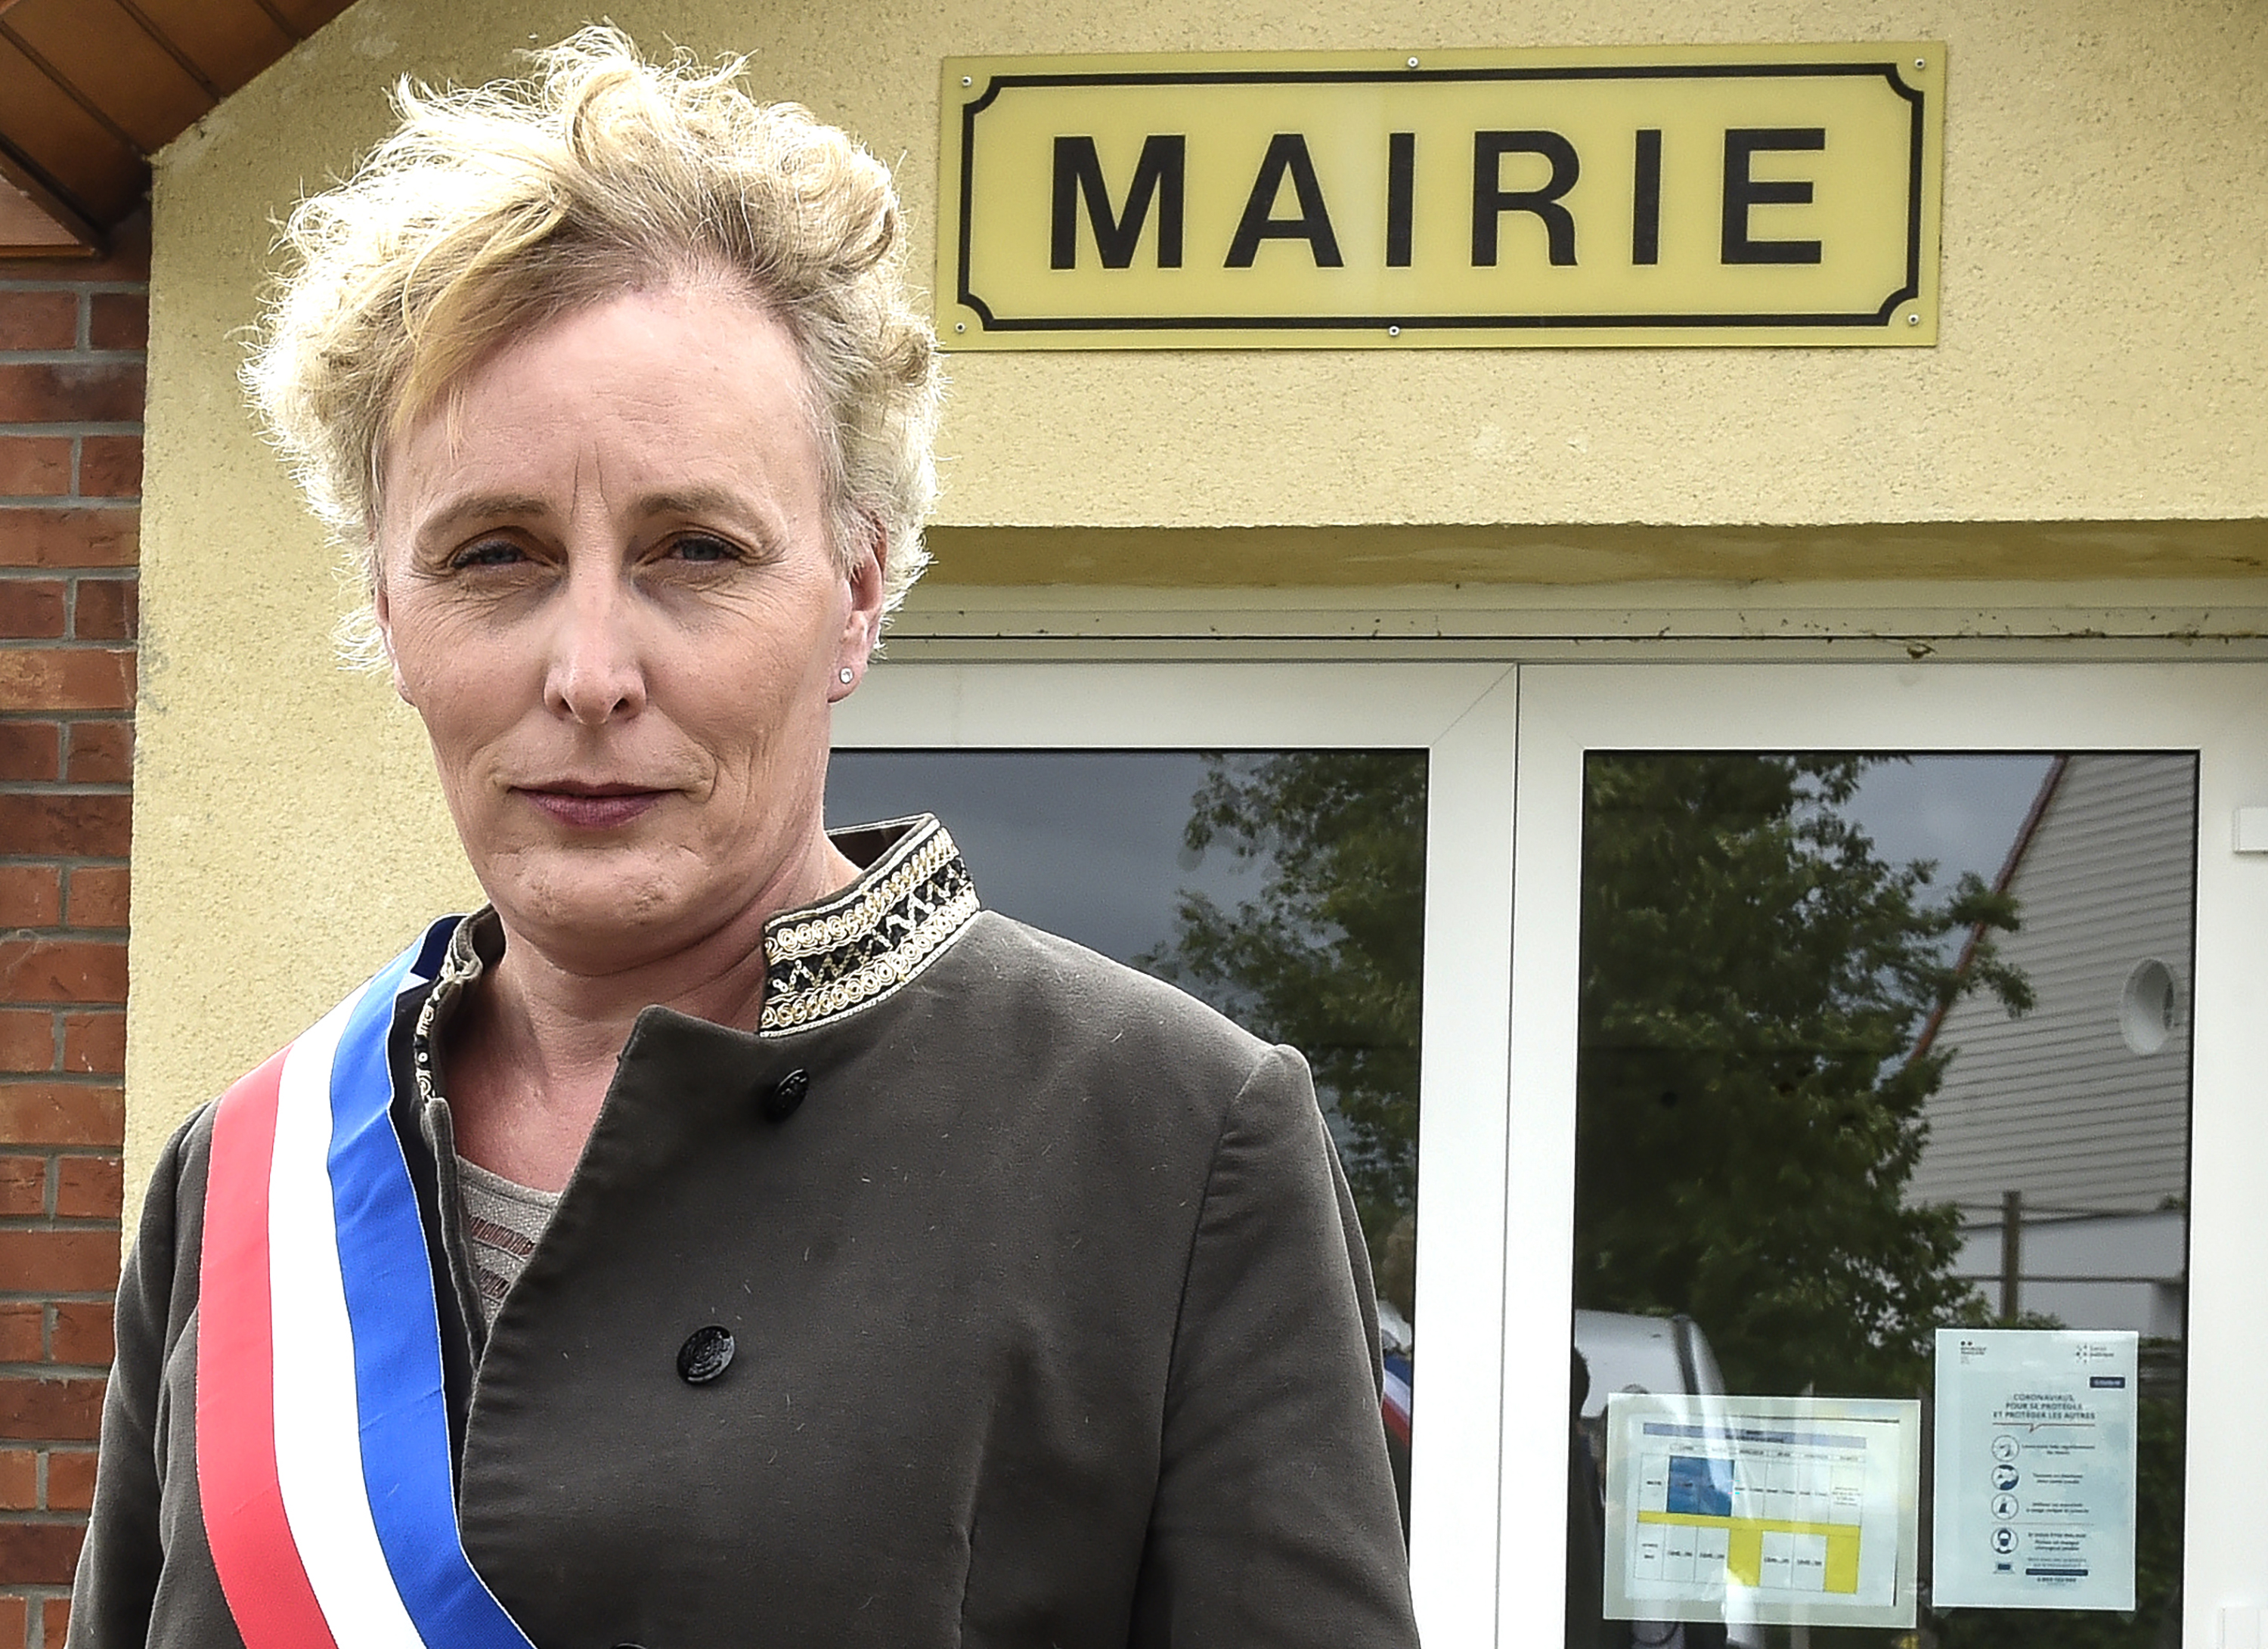 Nyíltan transznemű polgármestert választottak egy francia falu élére